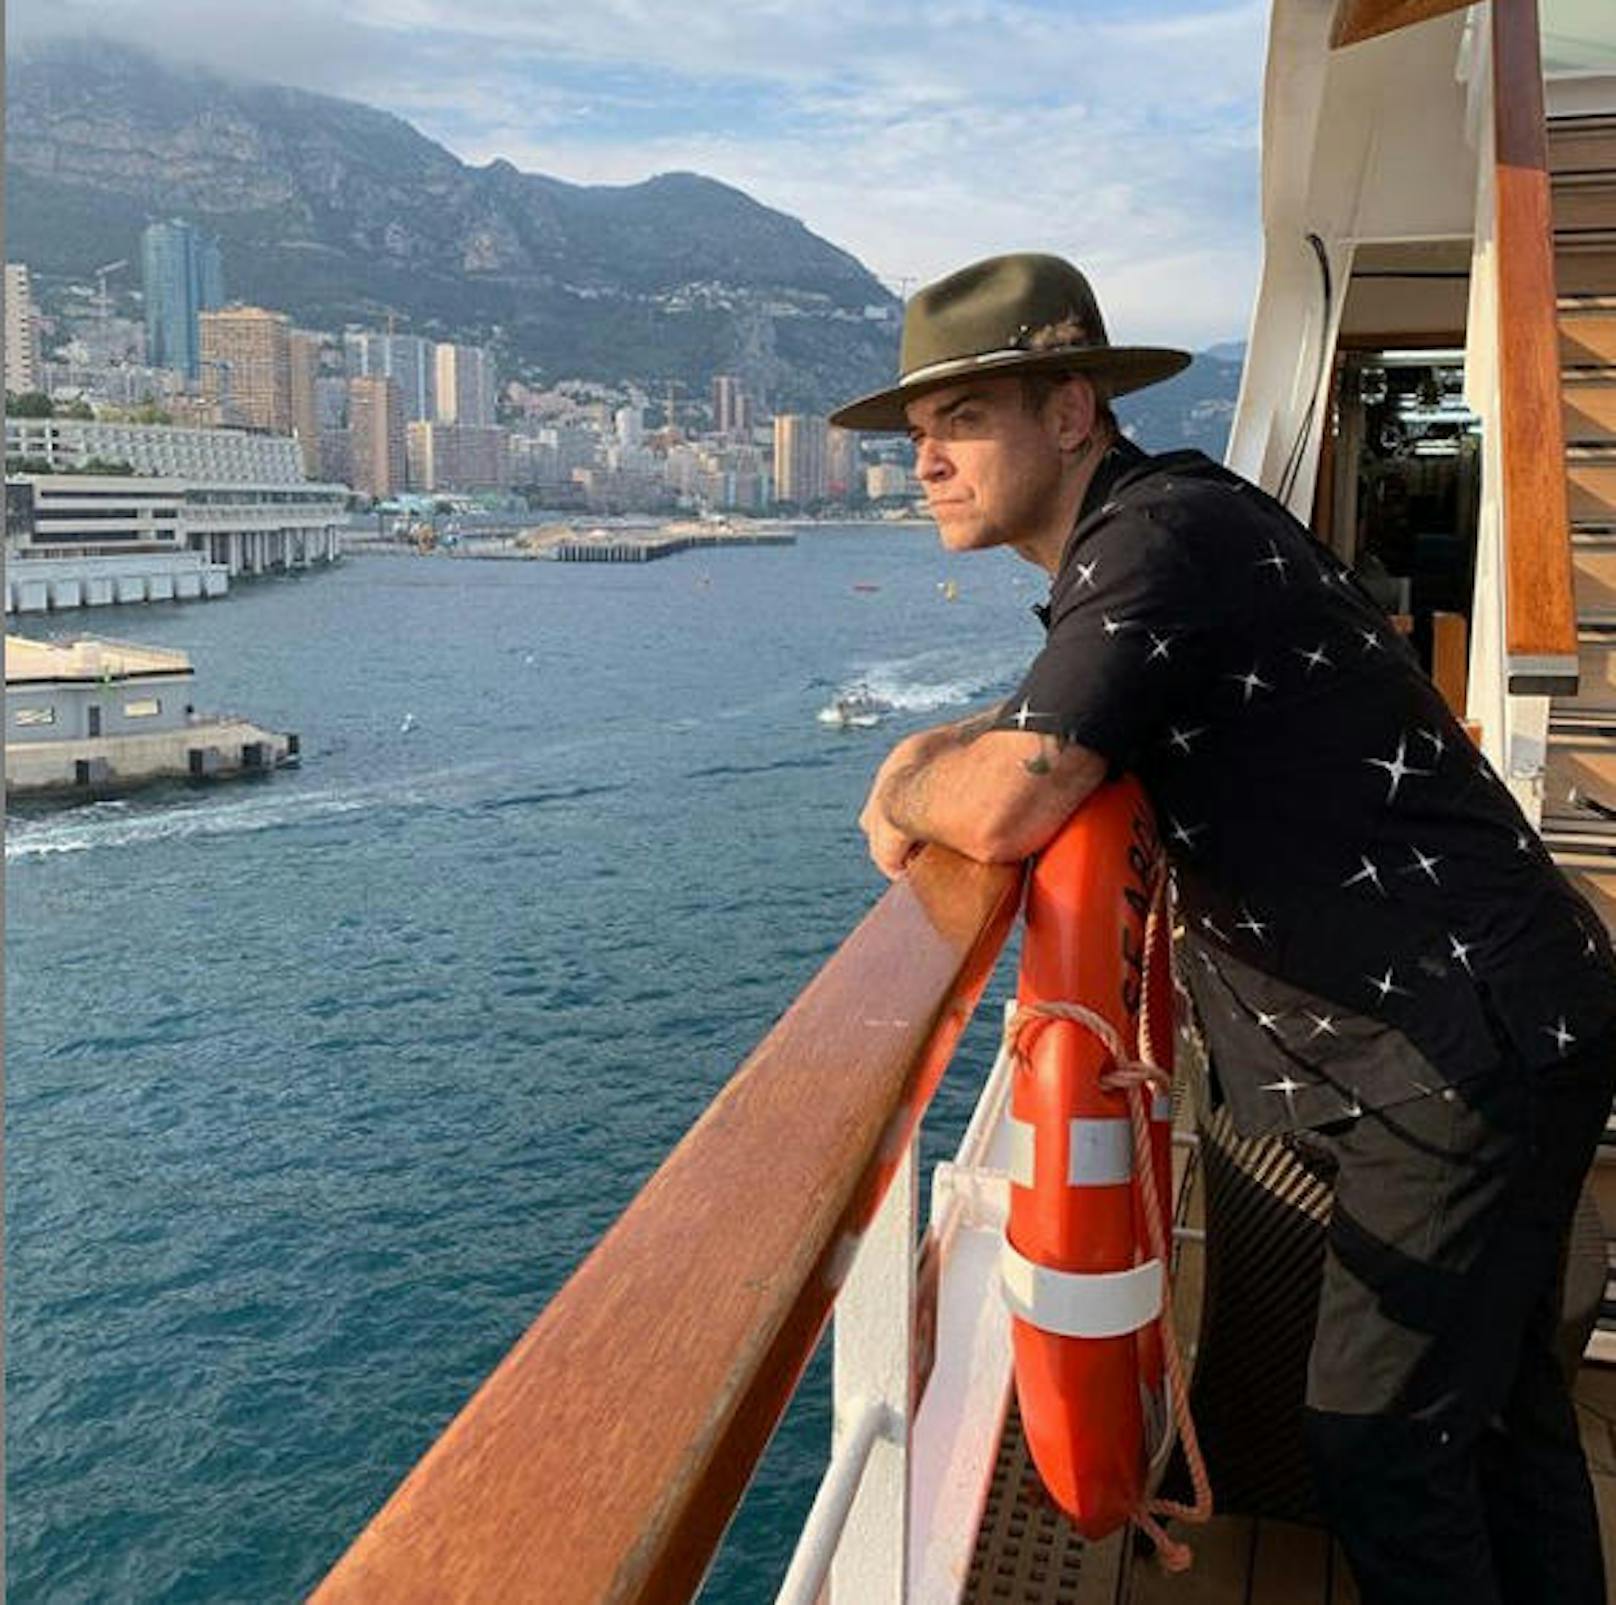 27.5.2019: "Hab mir grad ein Boot gekauft", schrieb Sänger Robbie Williams (45). Meint er es ernst? Seine Fans sind sich nicht sicher. 